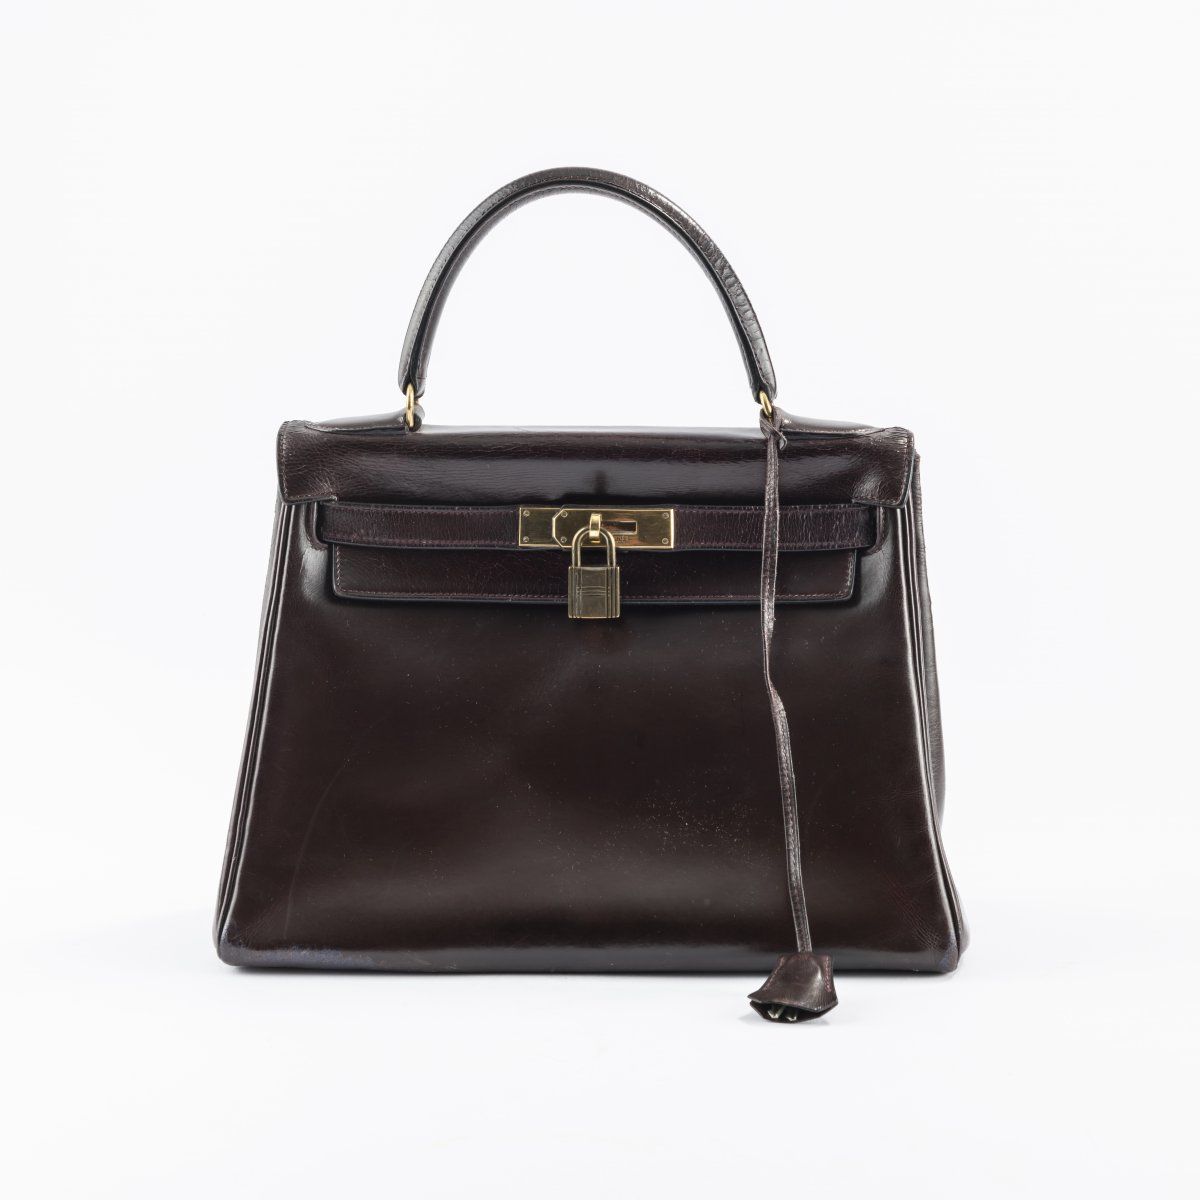 Hermès, Paris Hermès, Paris, 'Kelly Bag 28' handbag, 1955/56, Red-brown leather,&hellip;